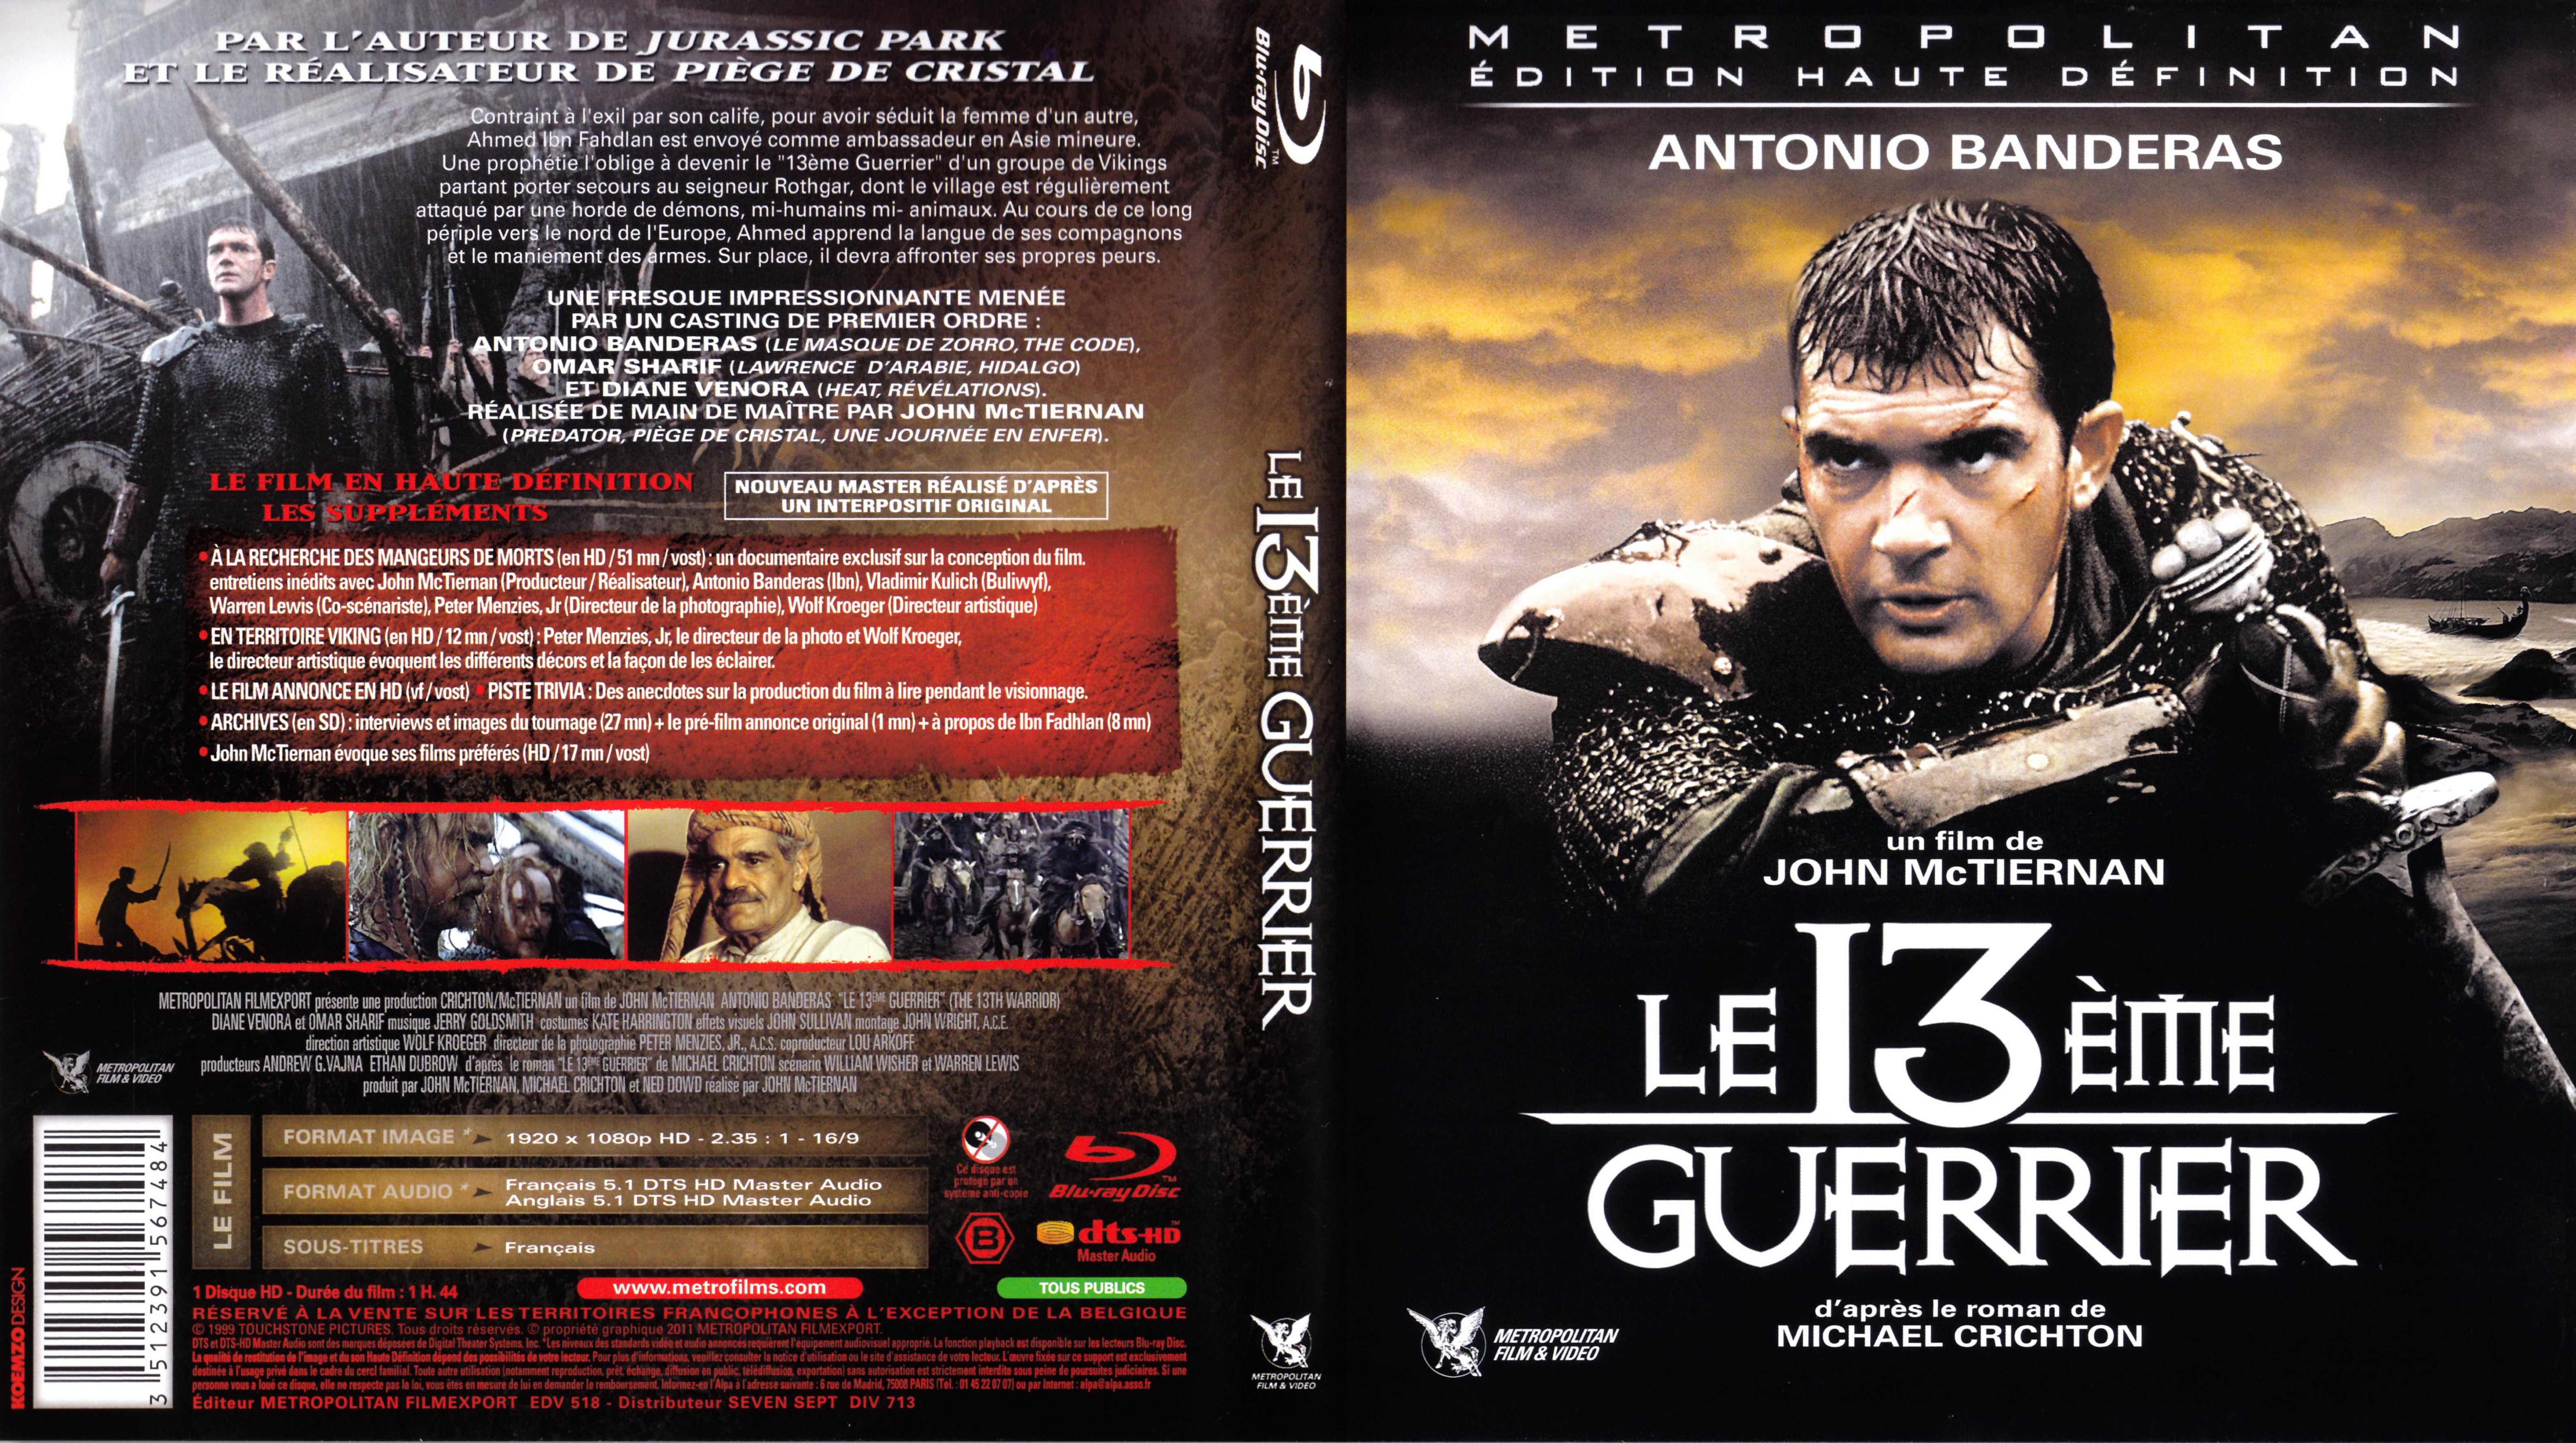 Jaquette DVD Le 13 me guerrier (BLU-RAY)